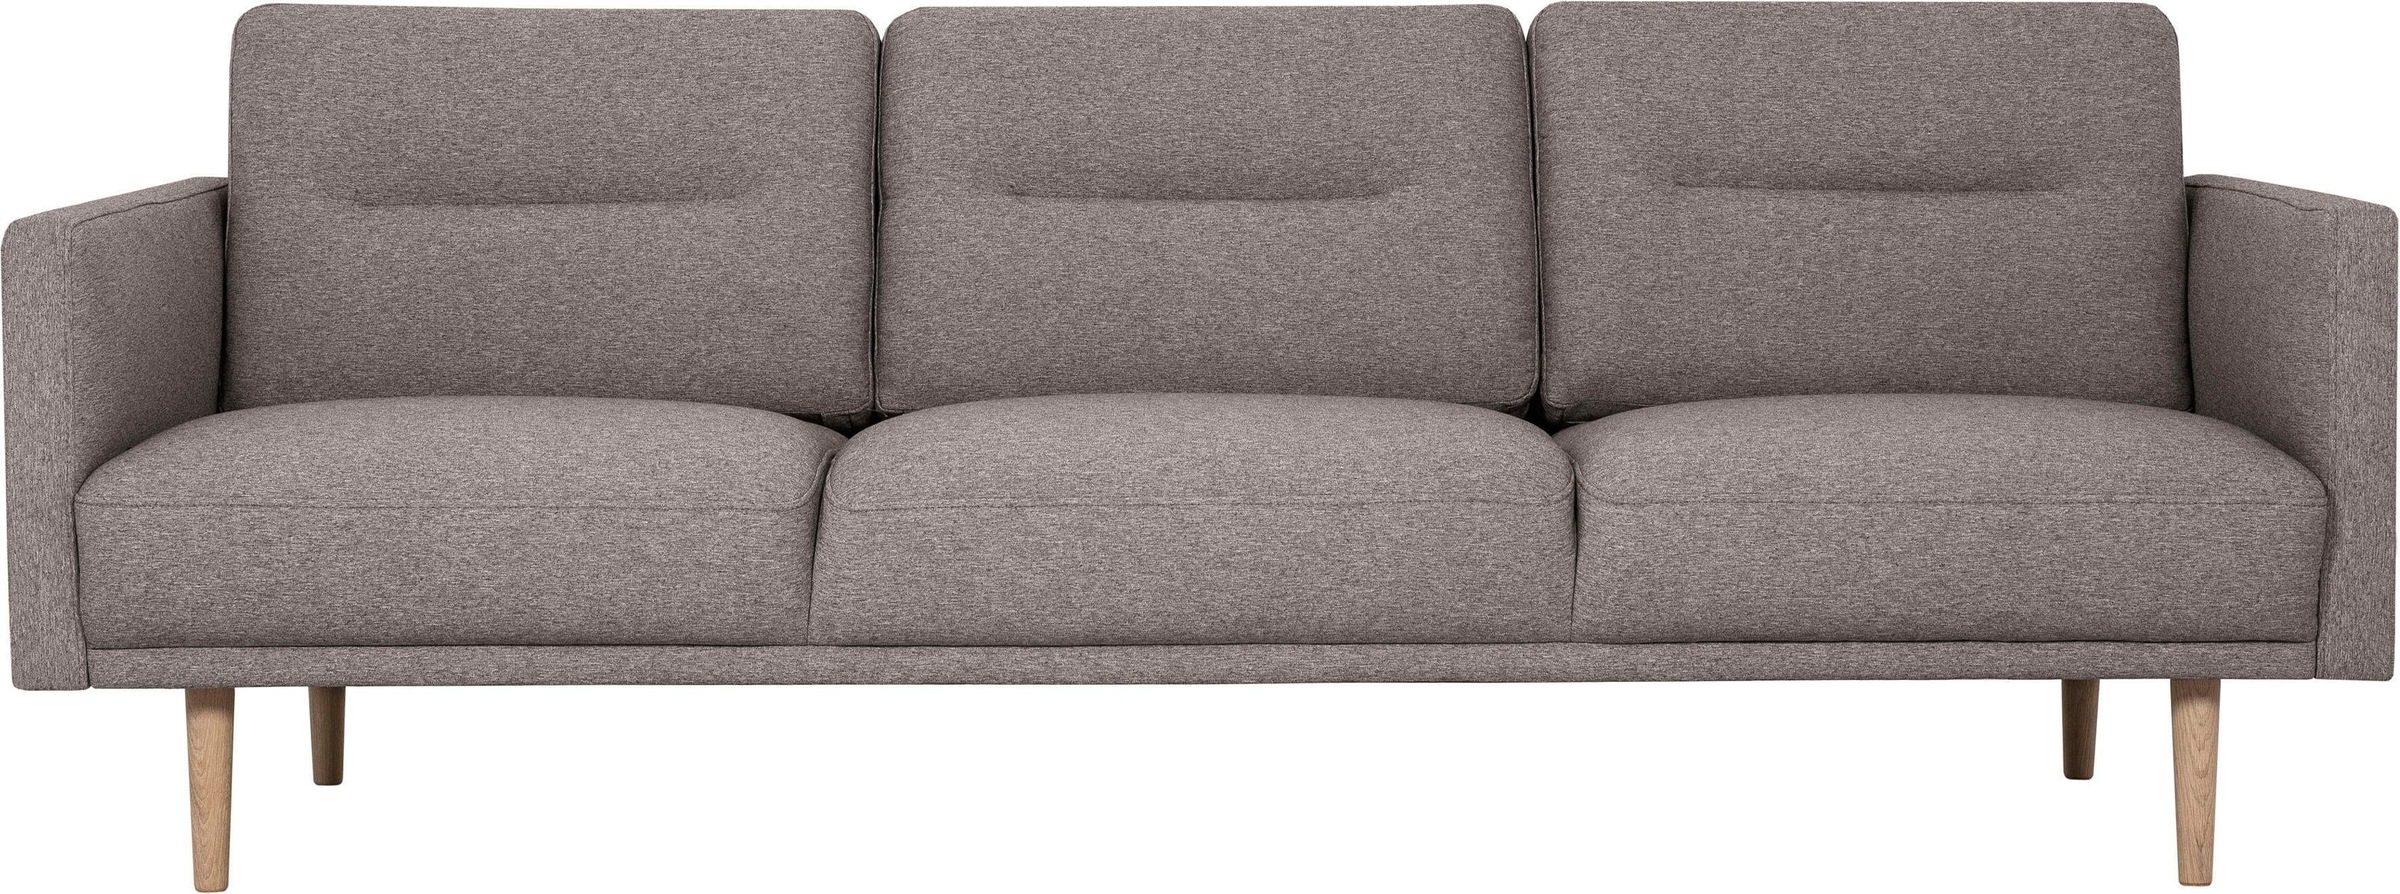 3-Sitzer »Brande«, in skandinavischem Design, verschiedene Farben verfügbar